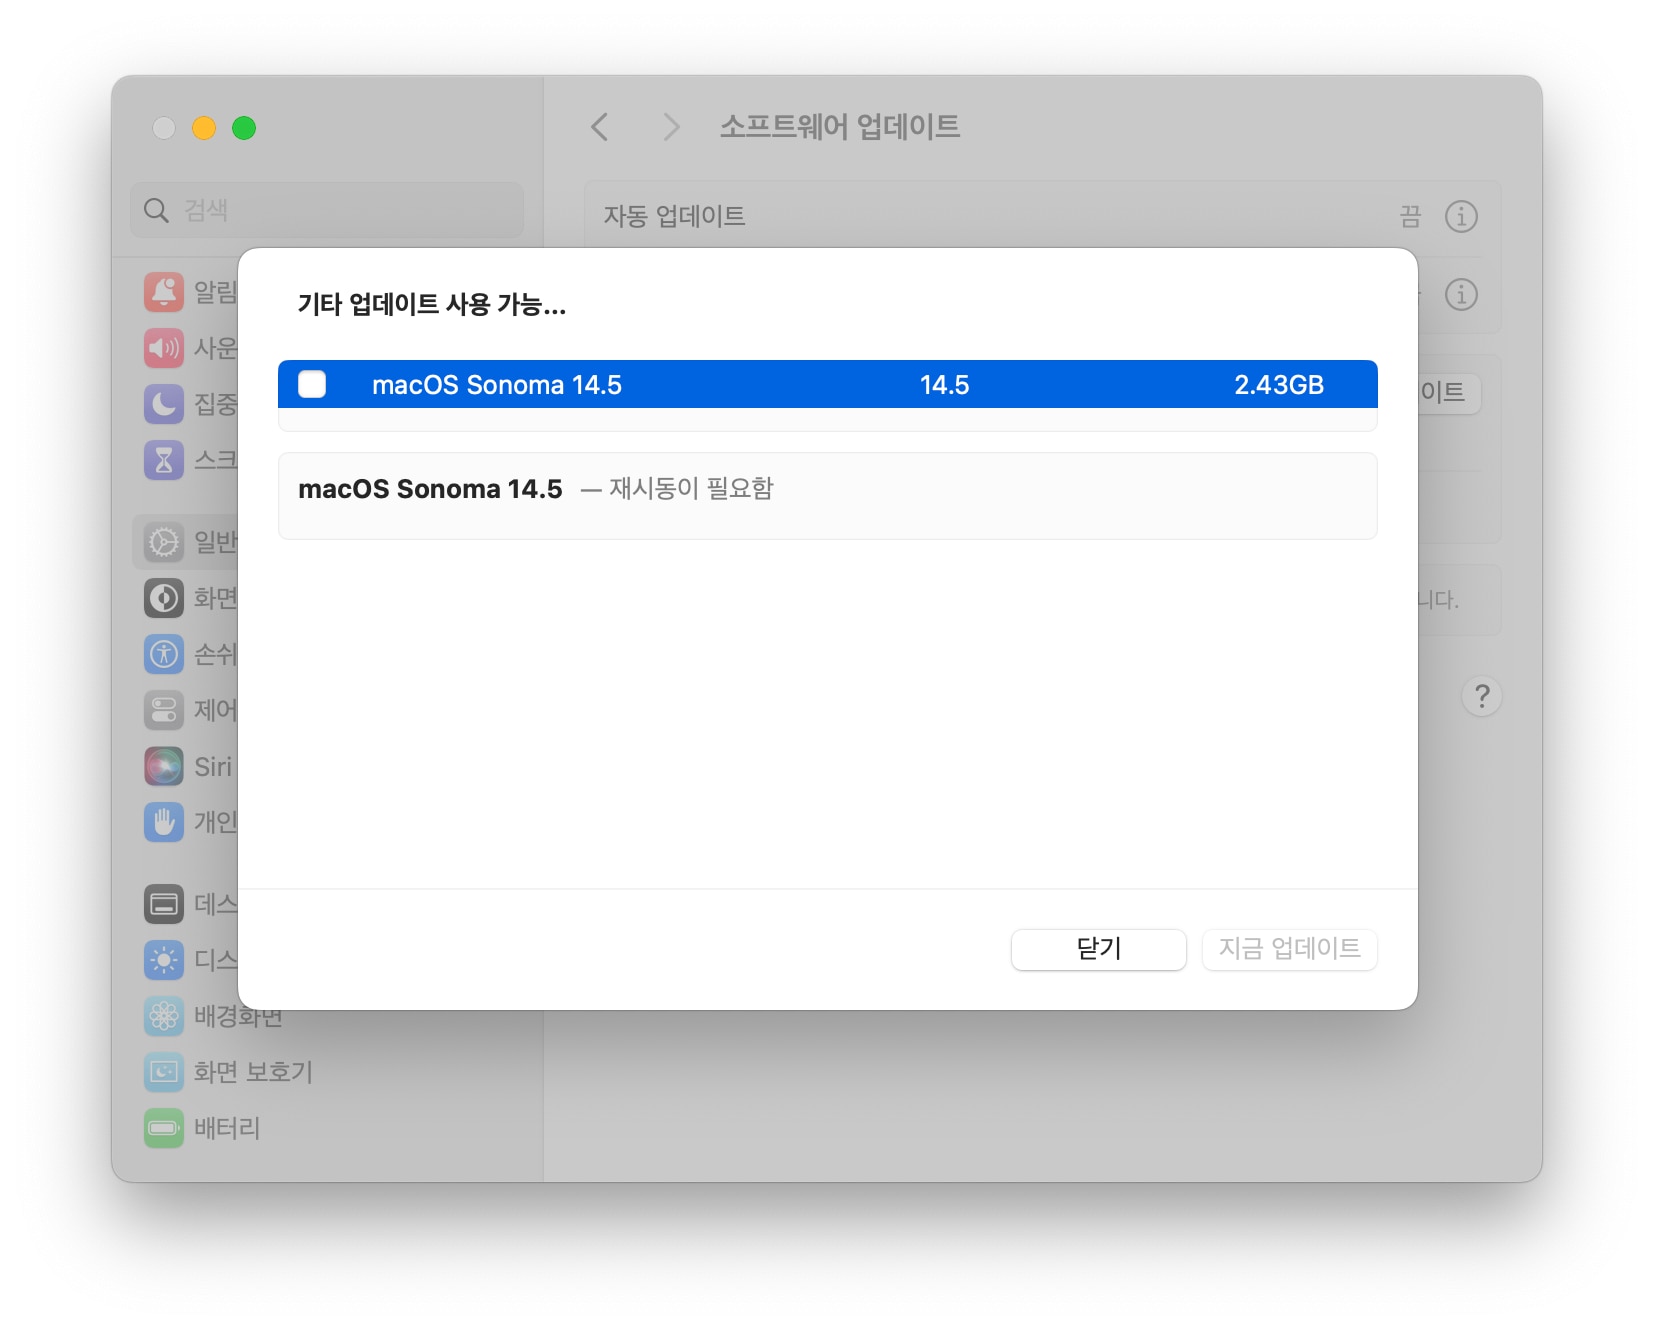 맥OS 소노마 14.5 업데이트 파일 용량